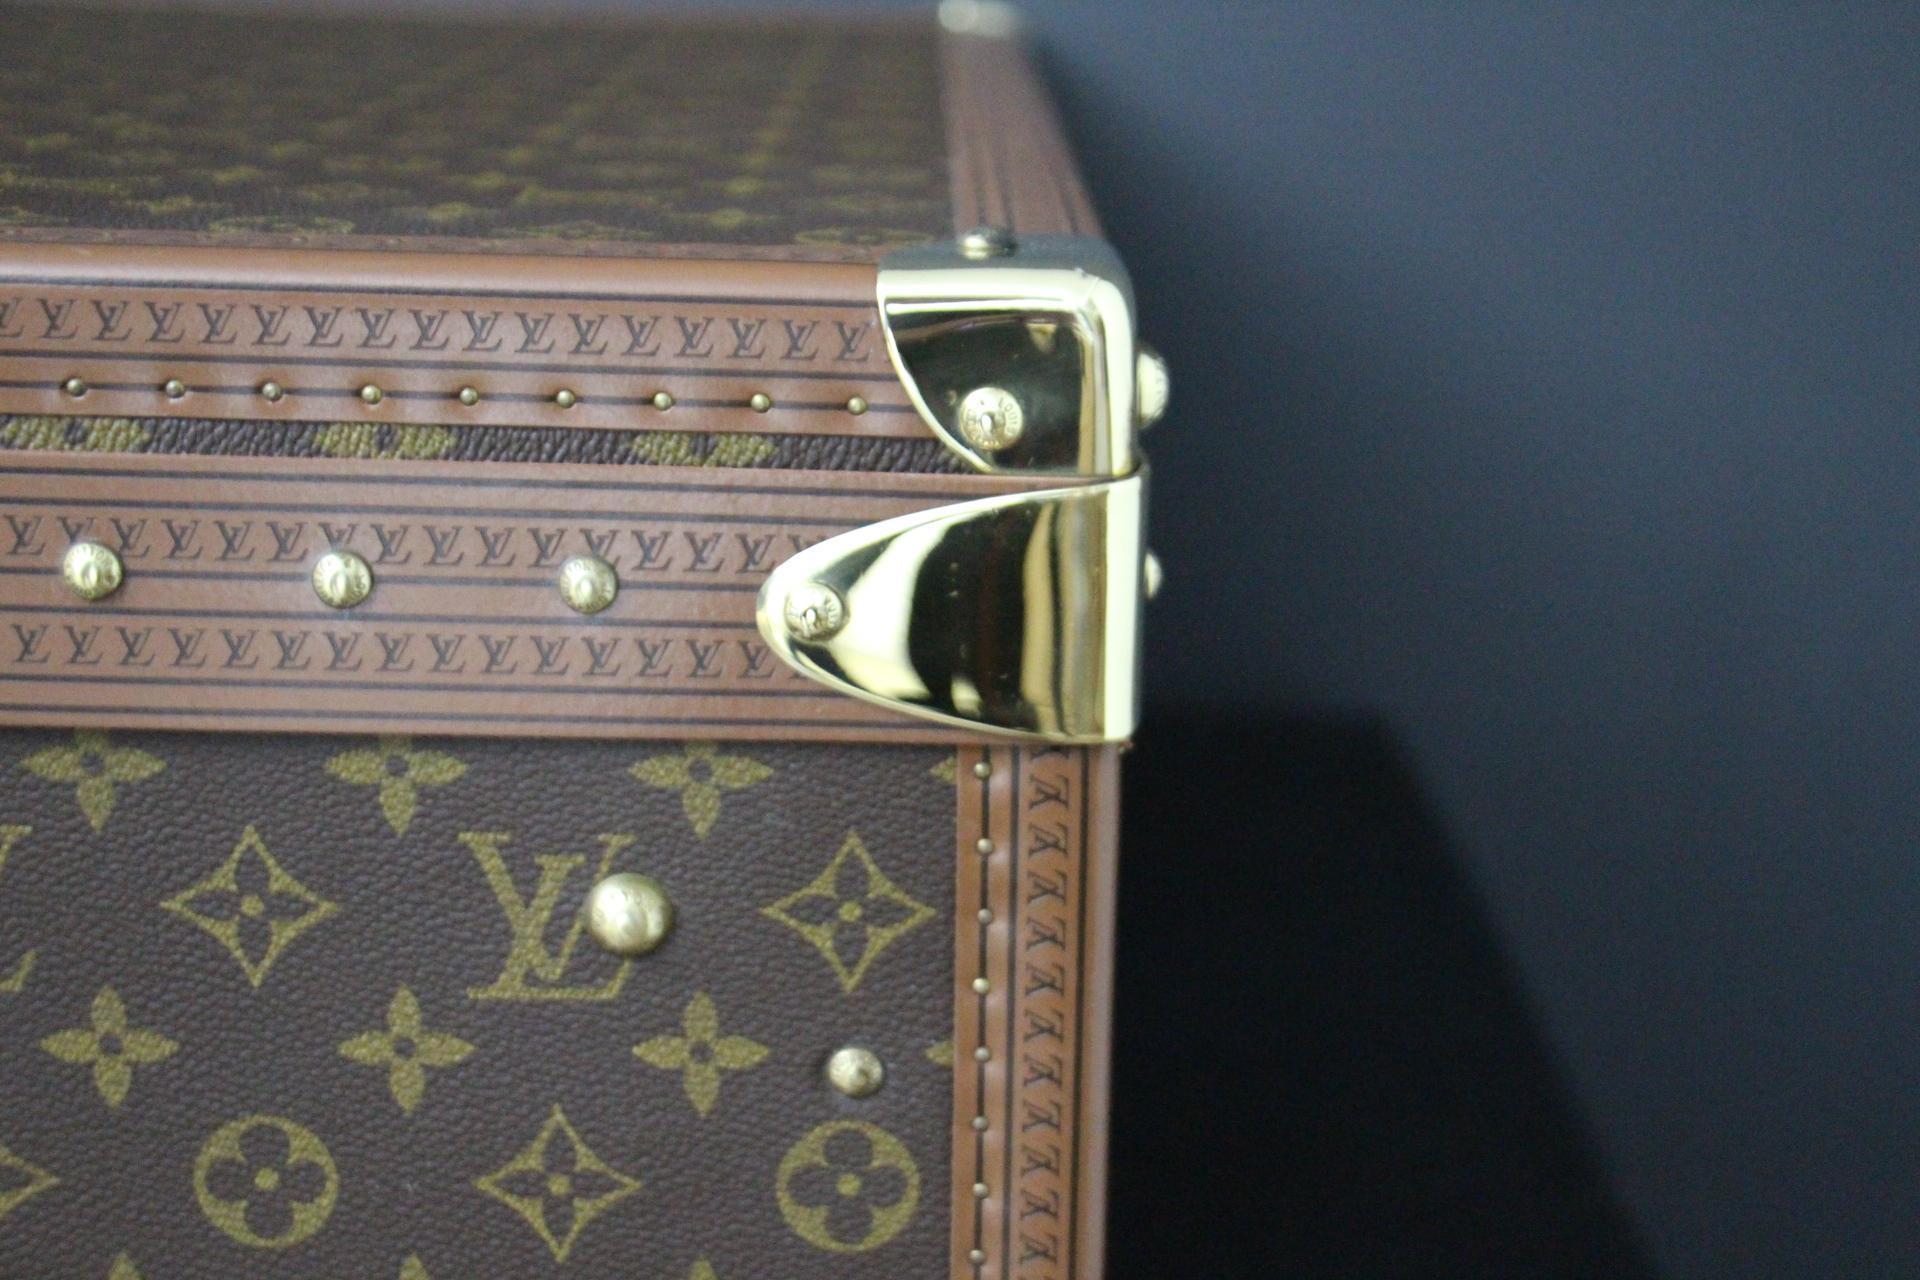  Valise Louis Vuitton, 55 Alzer valise Louis Vuitton, 55 cm 4